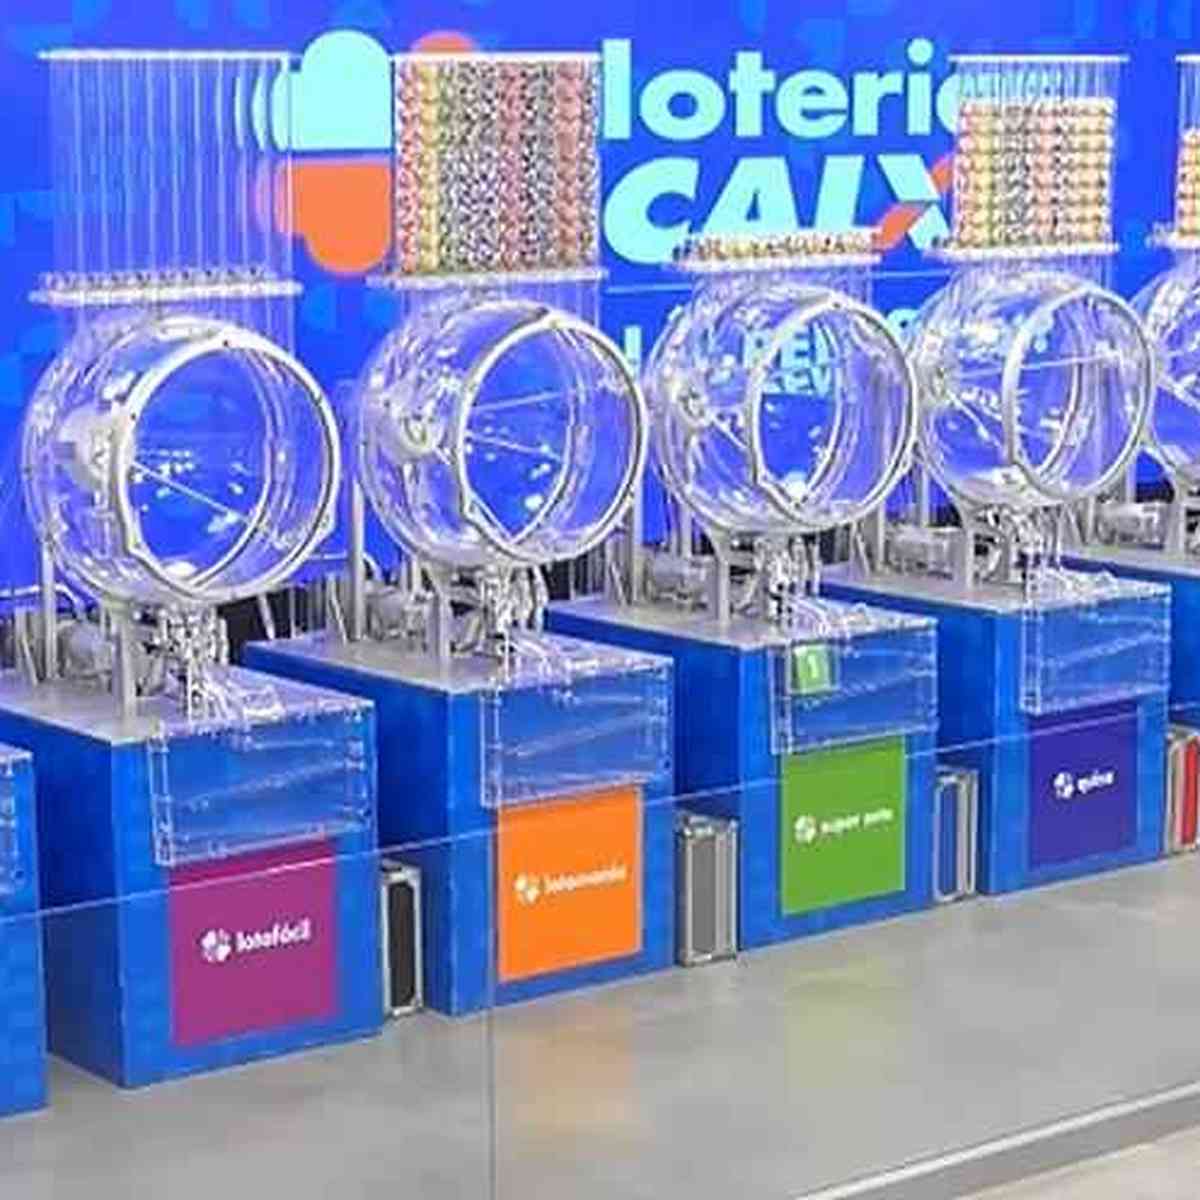 Concurso 2871 da Lotofácil acumula e loteria pode pagar R$ 4 milhões; veja  a chance de ganhar - Rádio Itatiaia